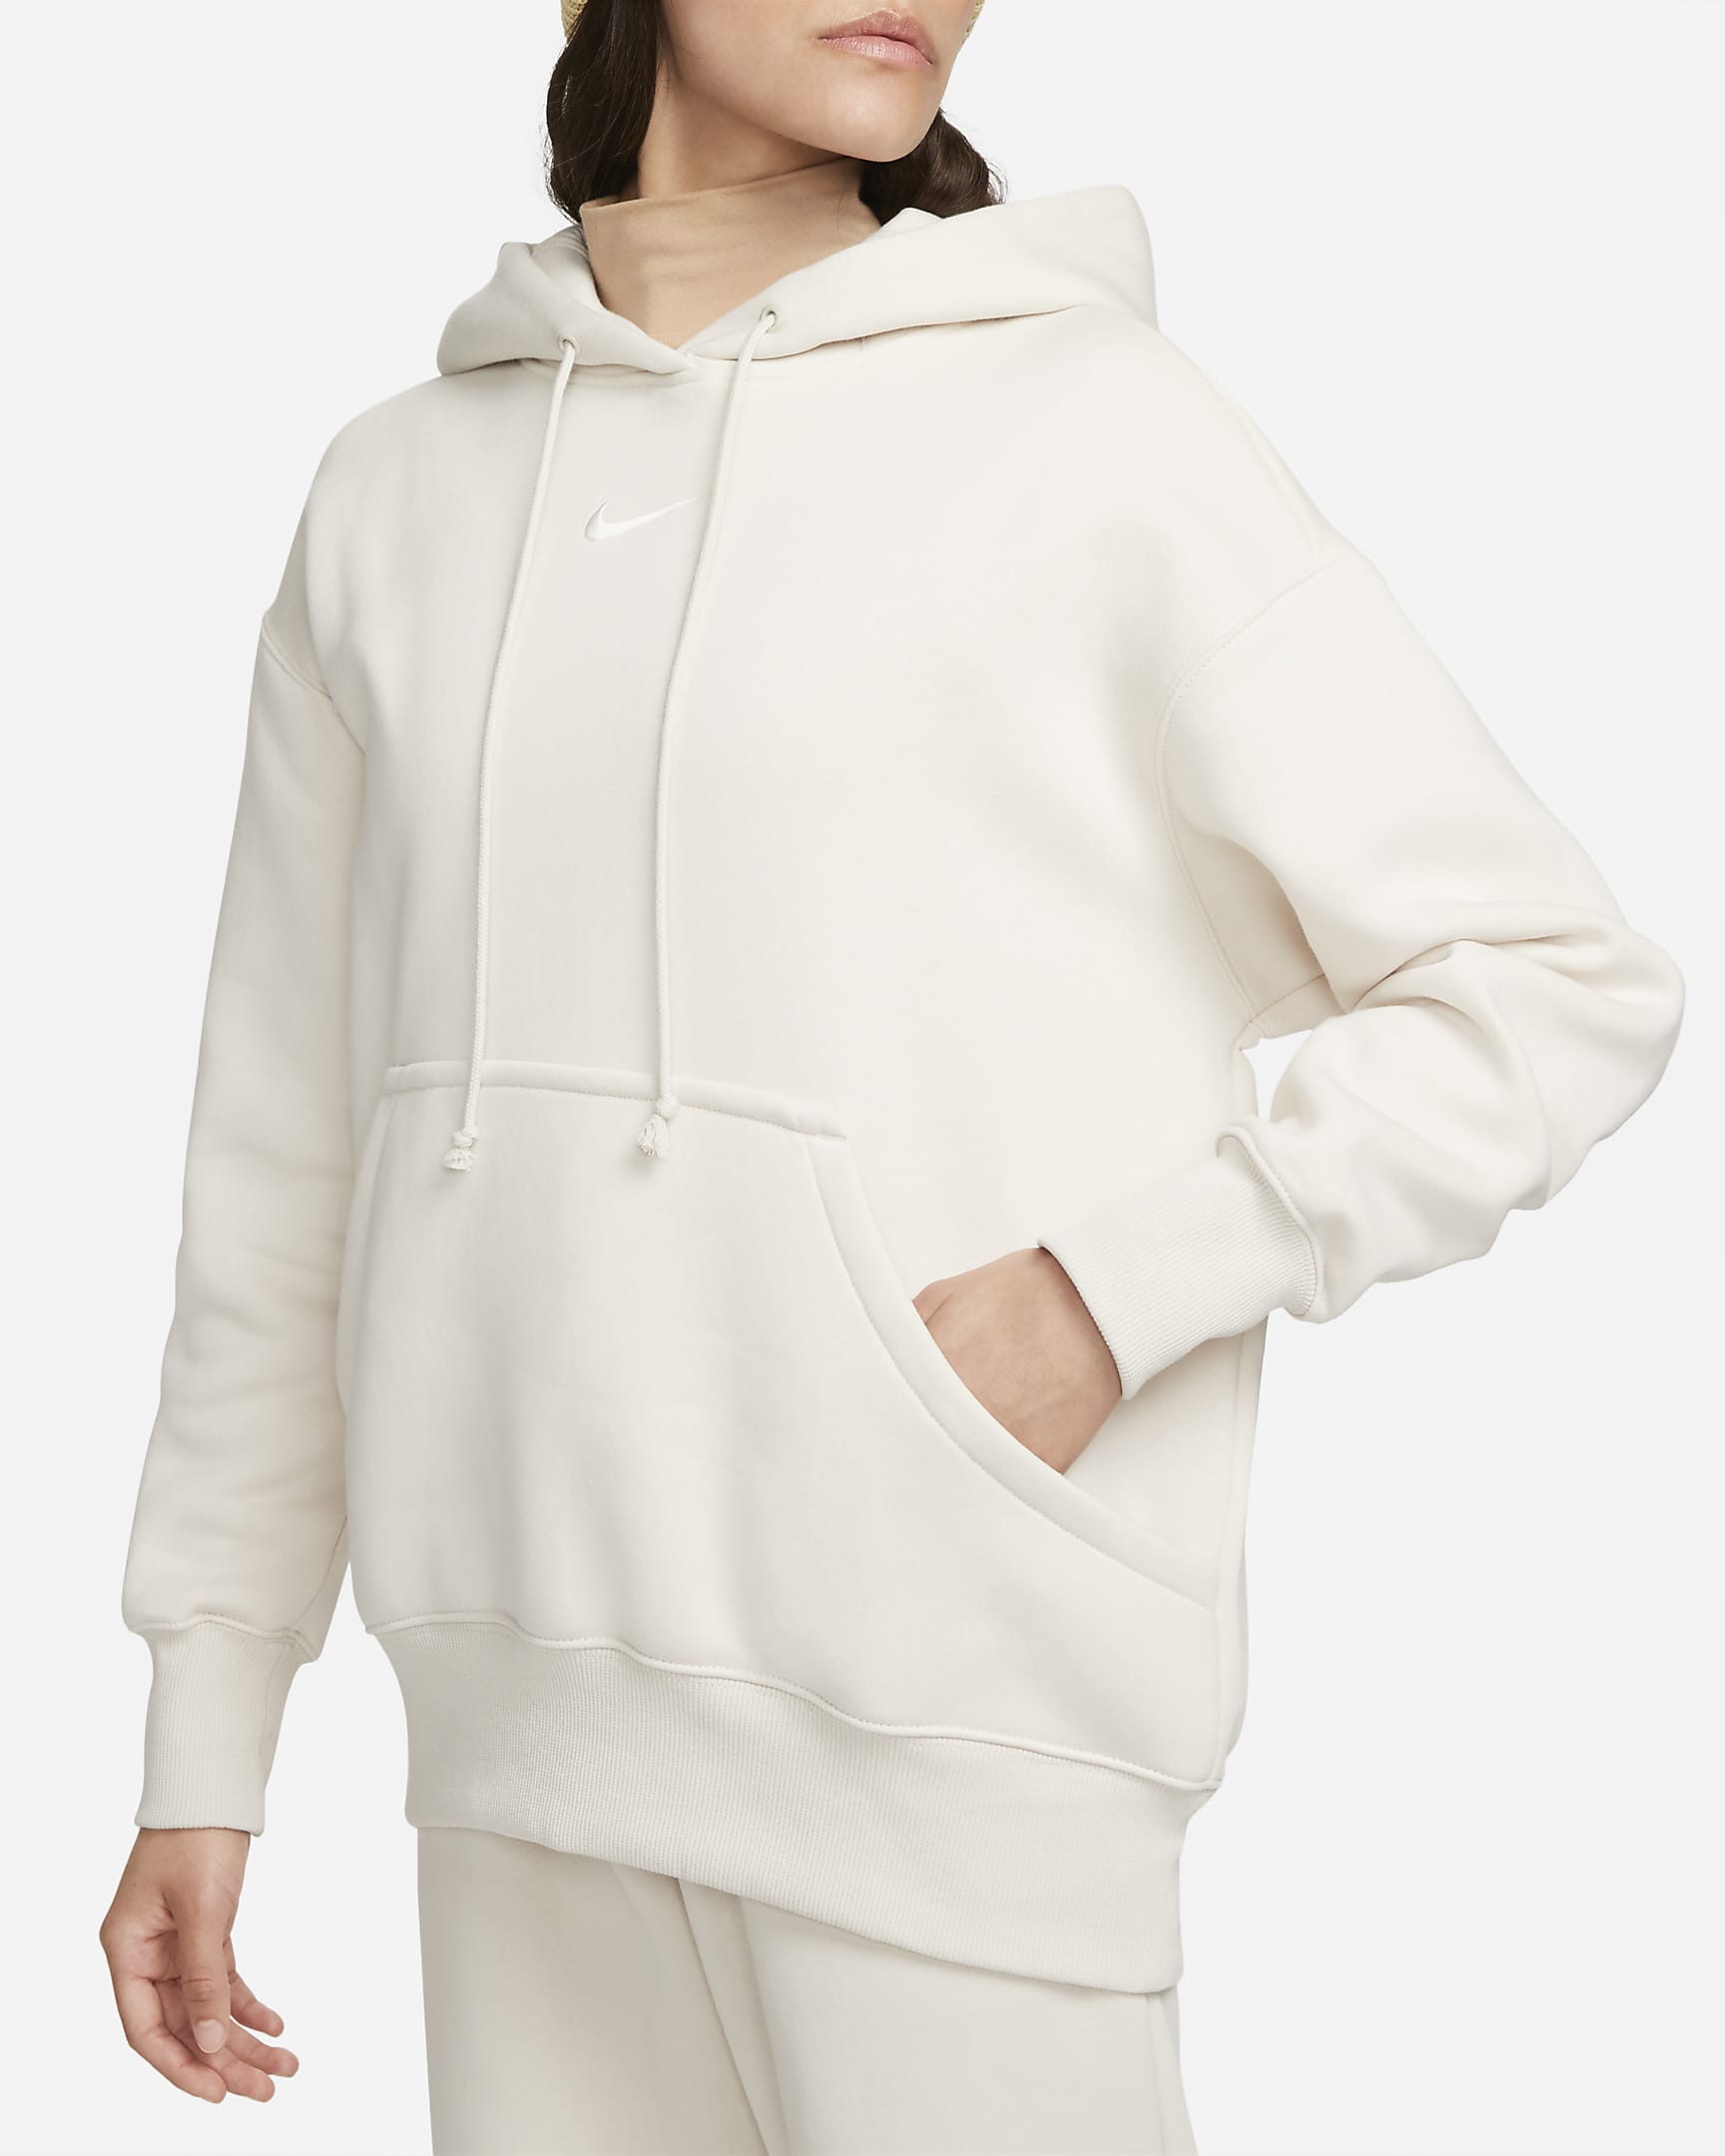 Nike Sportswear Phoenix Fleece Women's Oversized Pullover Hoodie - Light Orewood Brown/Sail